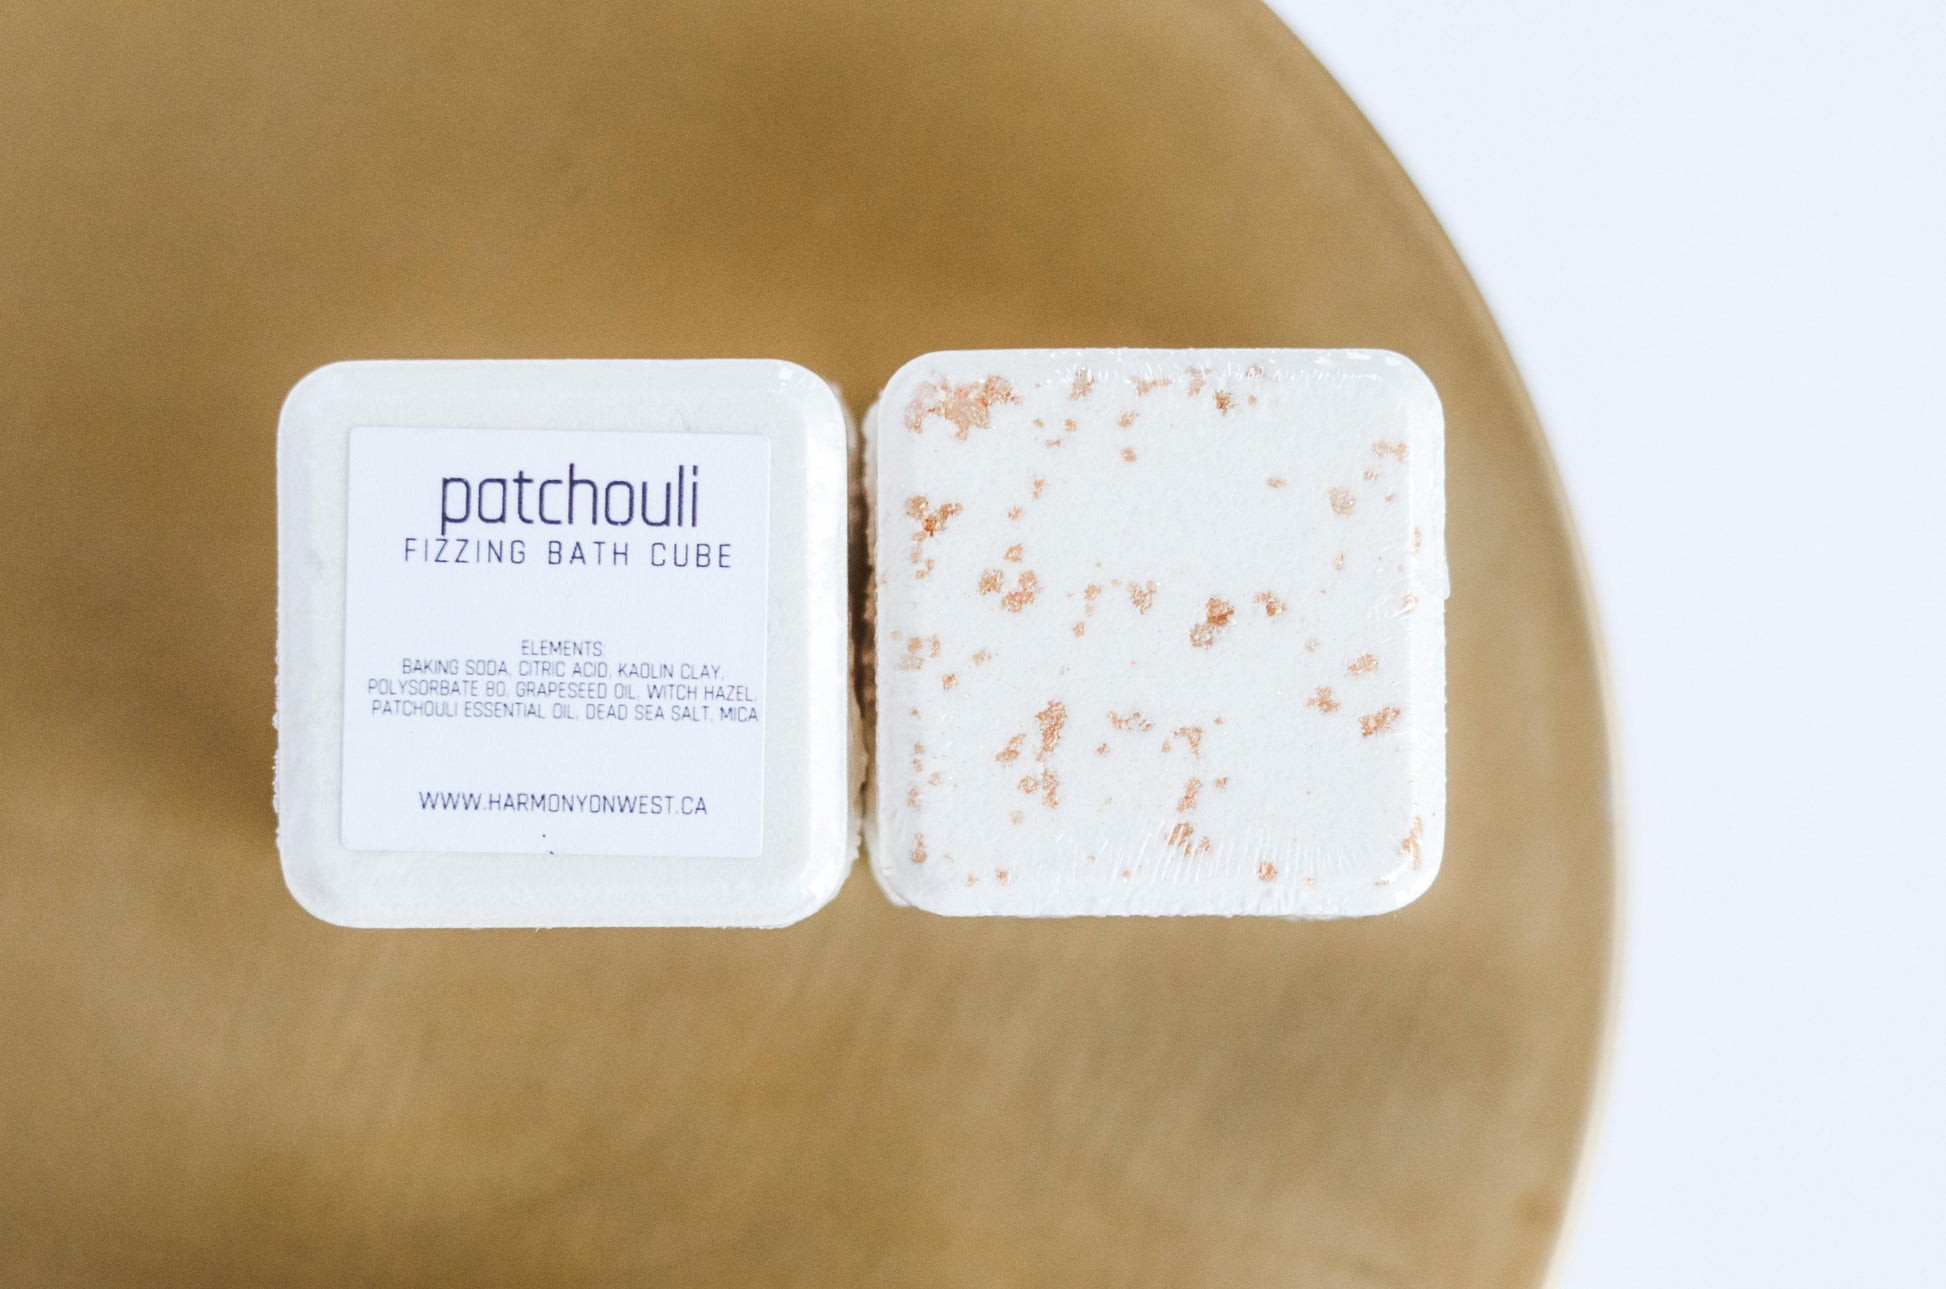 Bath Bomb | Patchouli - Harmony On West